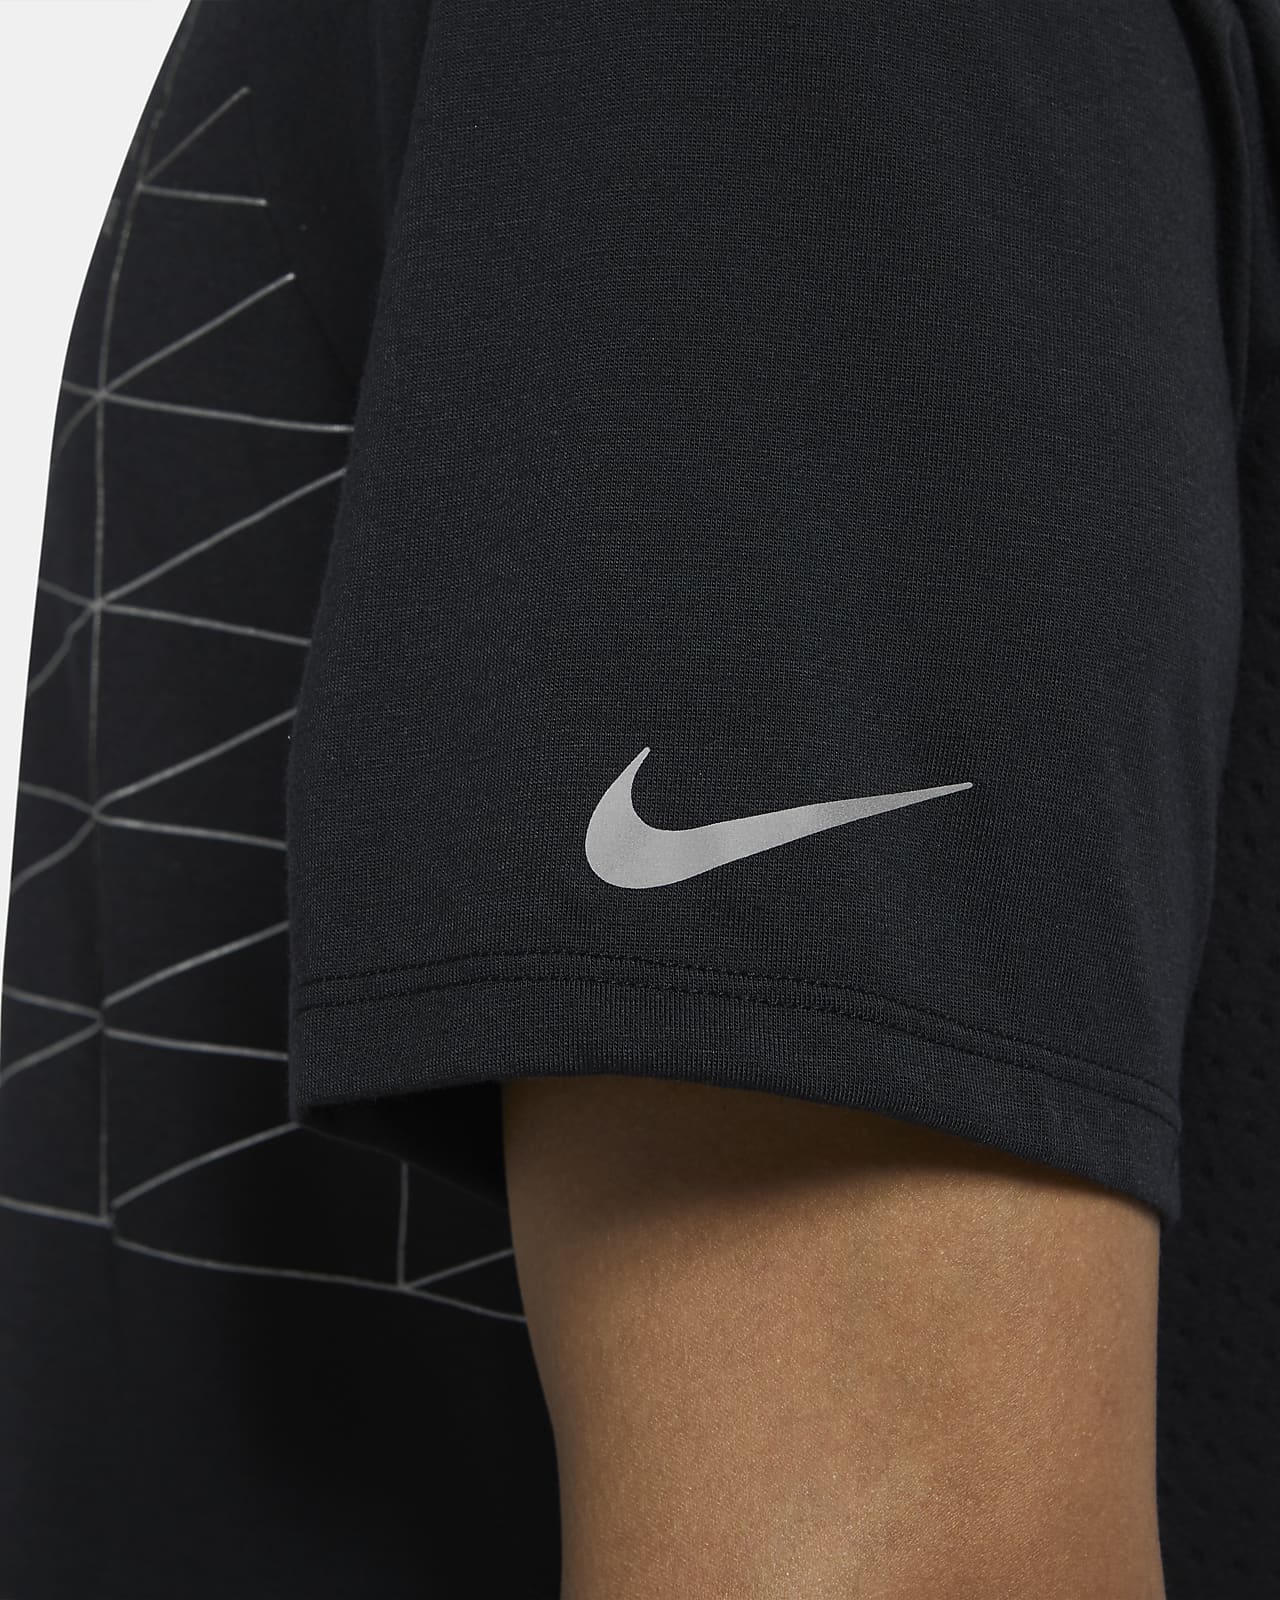 Nike公式 ナイキ ライズ 365 ラン ディビジョン メンズ フラッシュ ショートスリーブ ランニングトップ オンラインストア 通販サイト